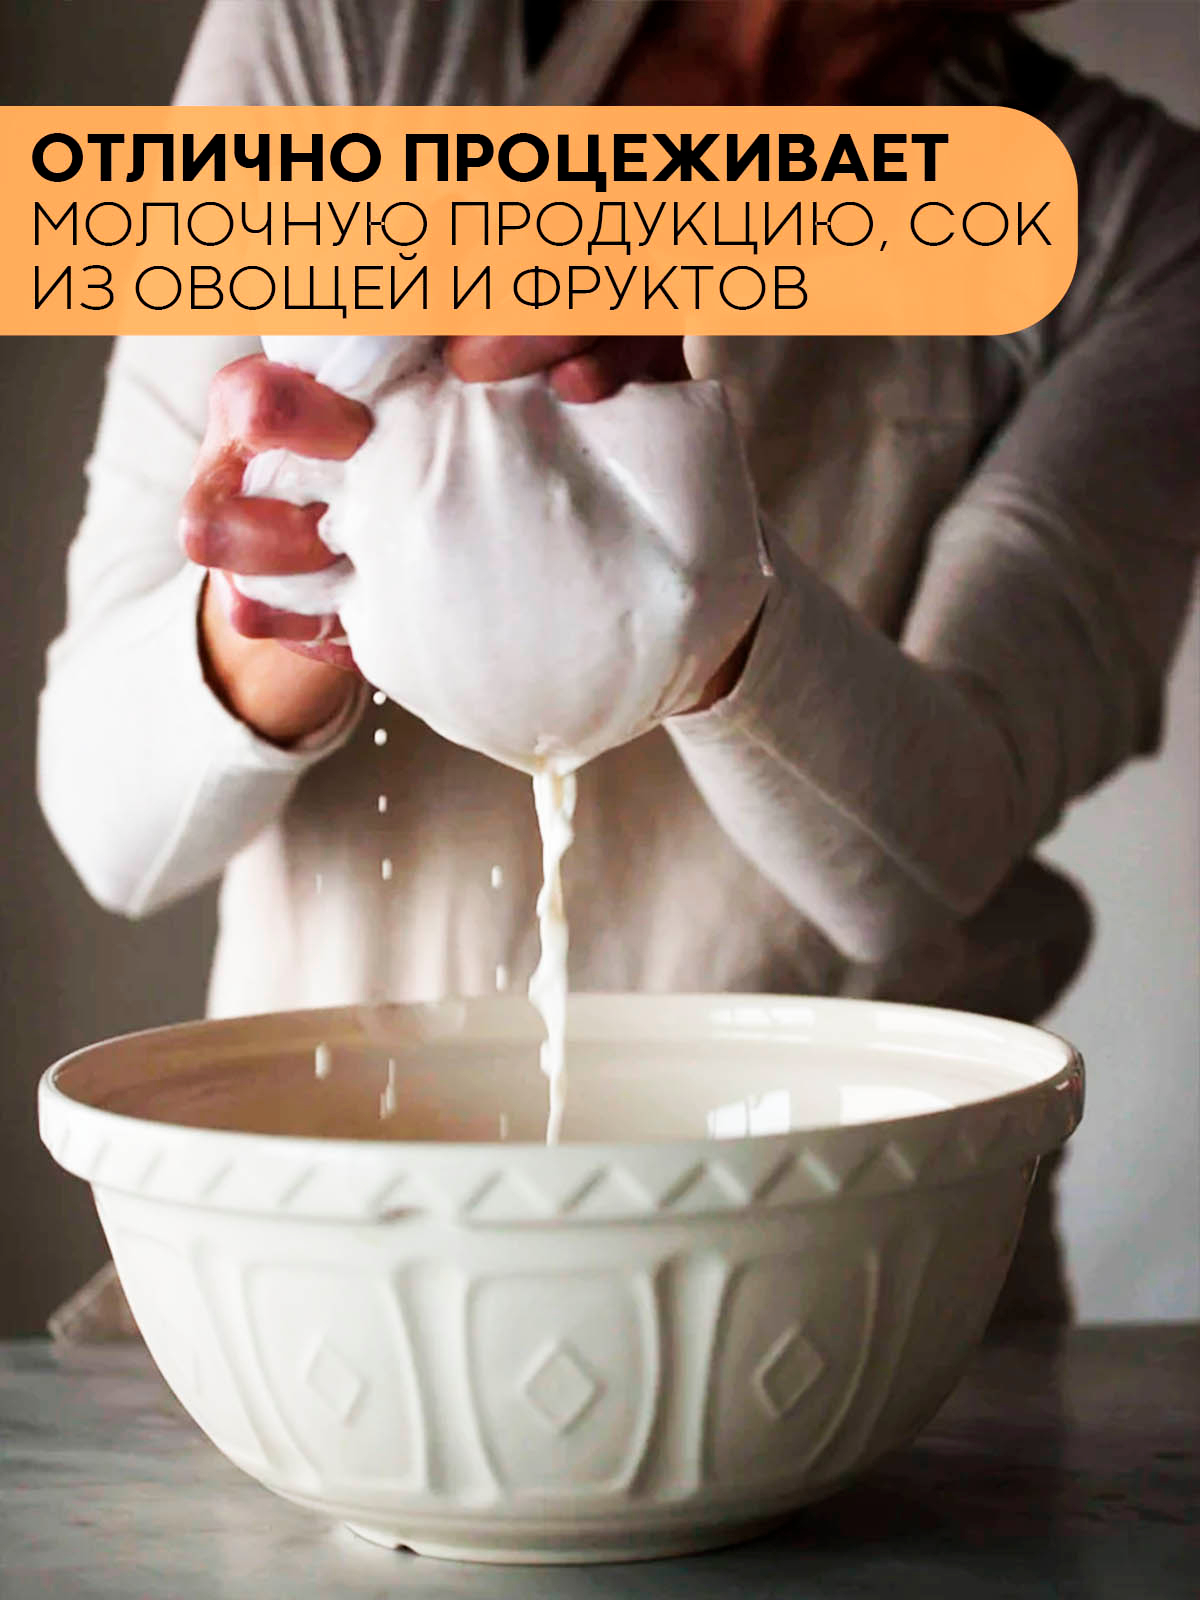 купить Мешочек для отжима орехового молока в И-МНЕ Киев | Купить в И-МНЕ Киев